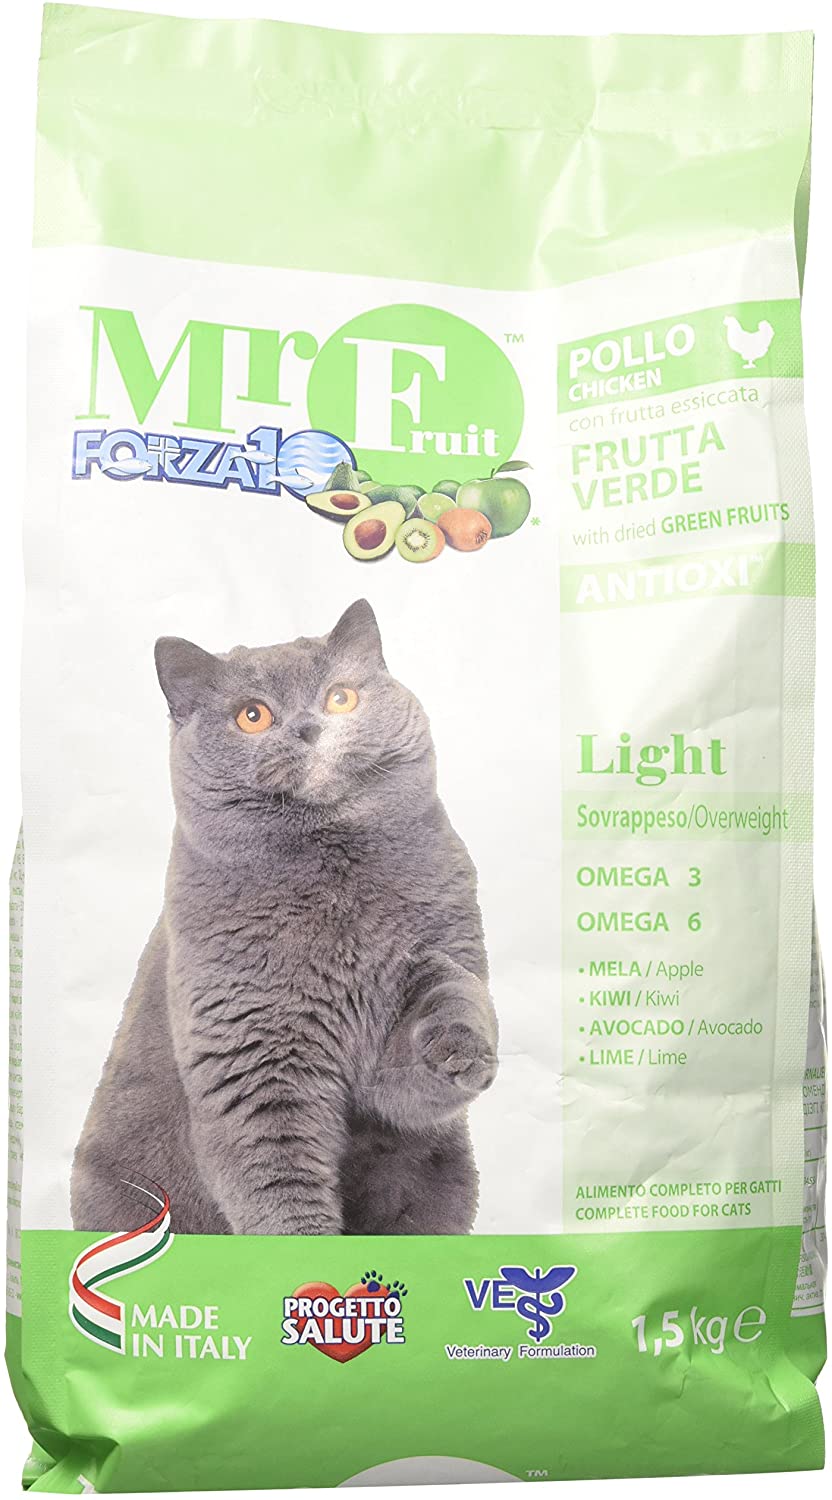  F10 Mr Fruit Gato Light kg 1,5 Verde 